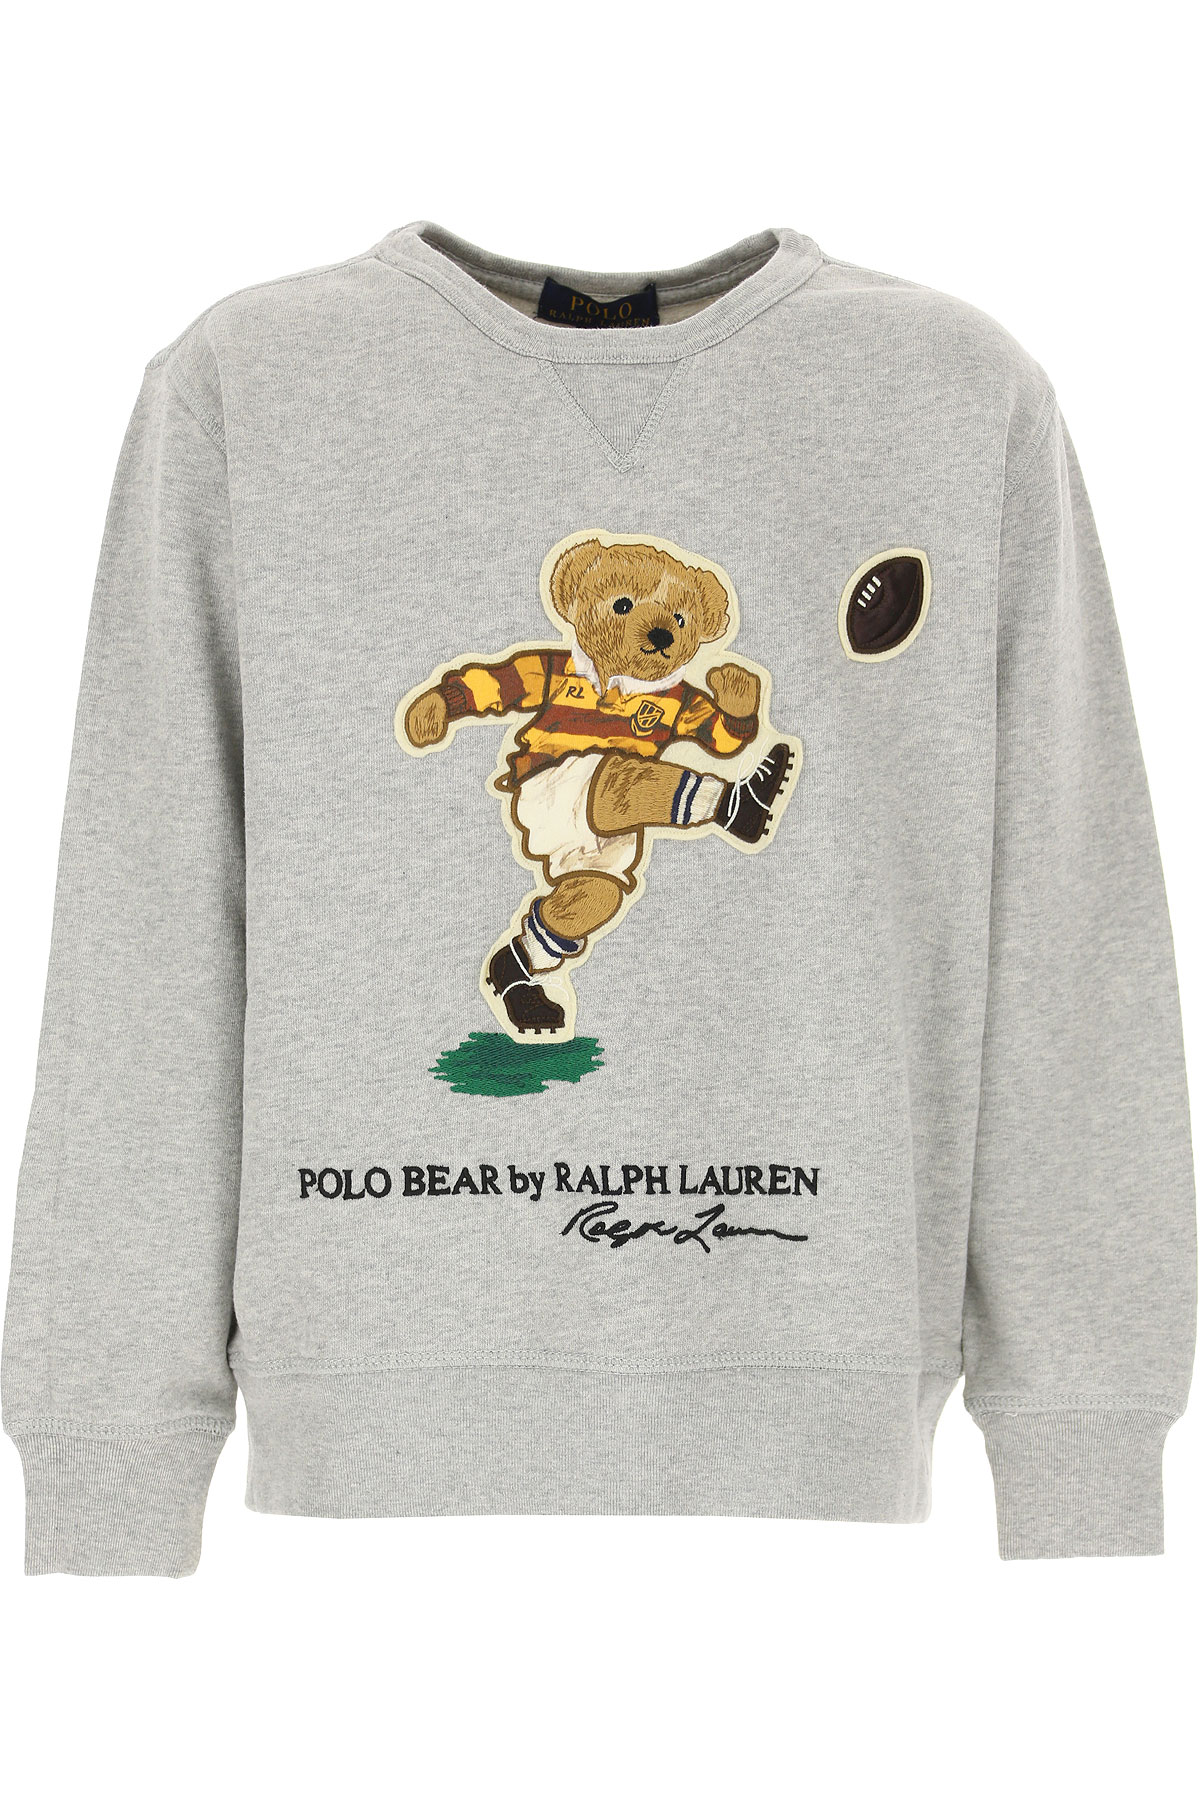 Ralph Lauren Kinder Sweatshirt & Kapuzenpullover für Jungen Günstig im Sale, Grau, Baumwolle, 2017, L M S XL